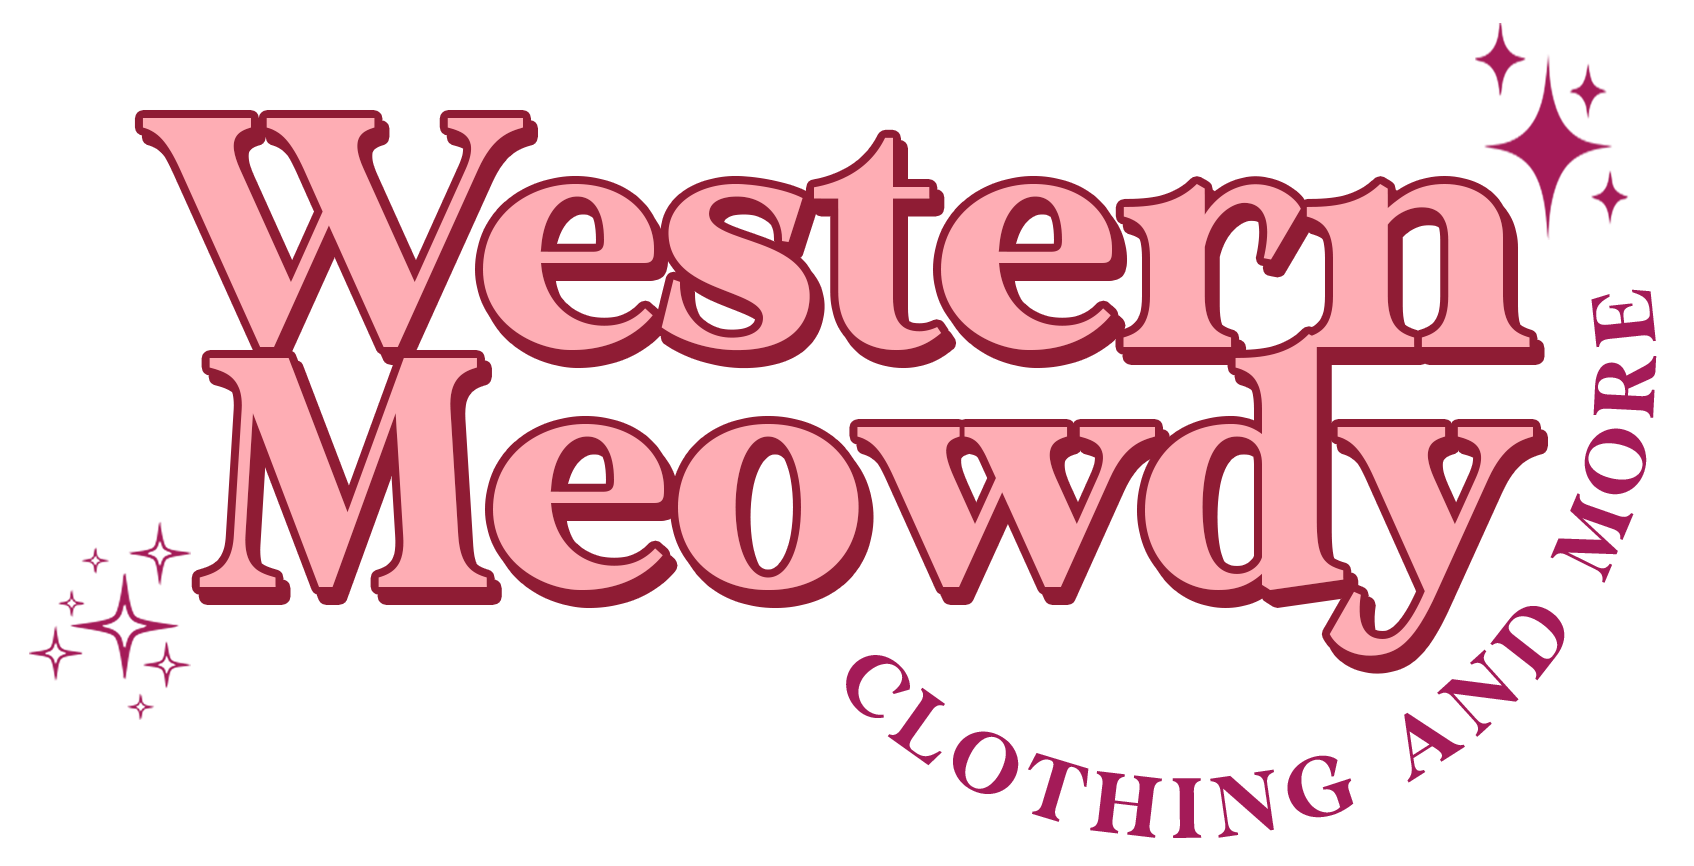 Western Meowdy